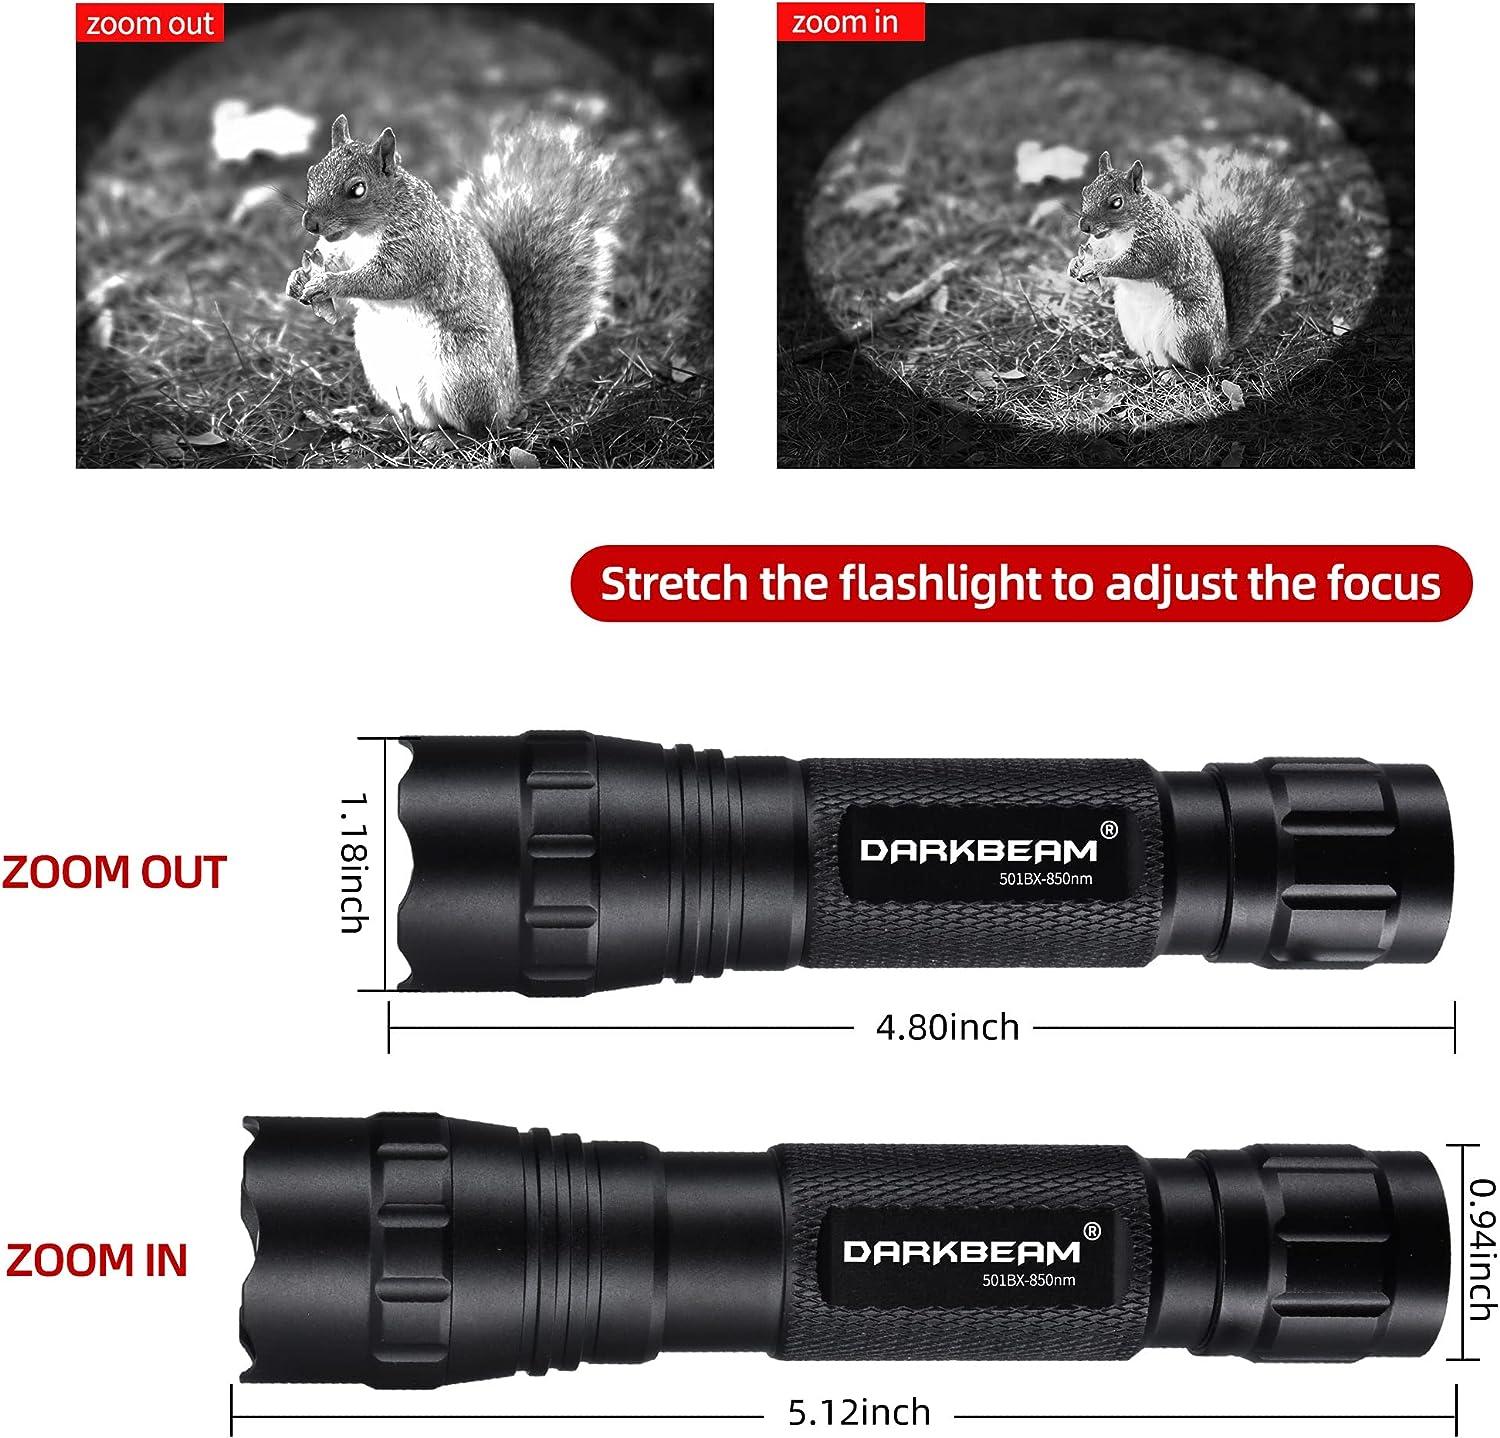 DARKBEAM Infrared 850nm Light for Night Vision Scope, LED Long